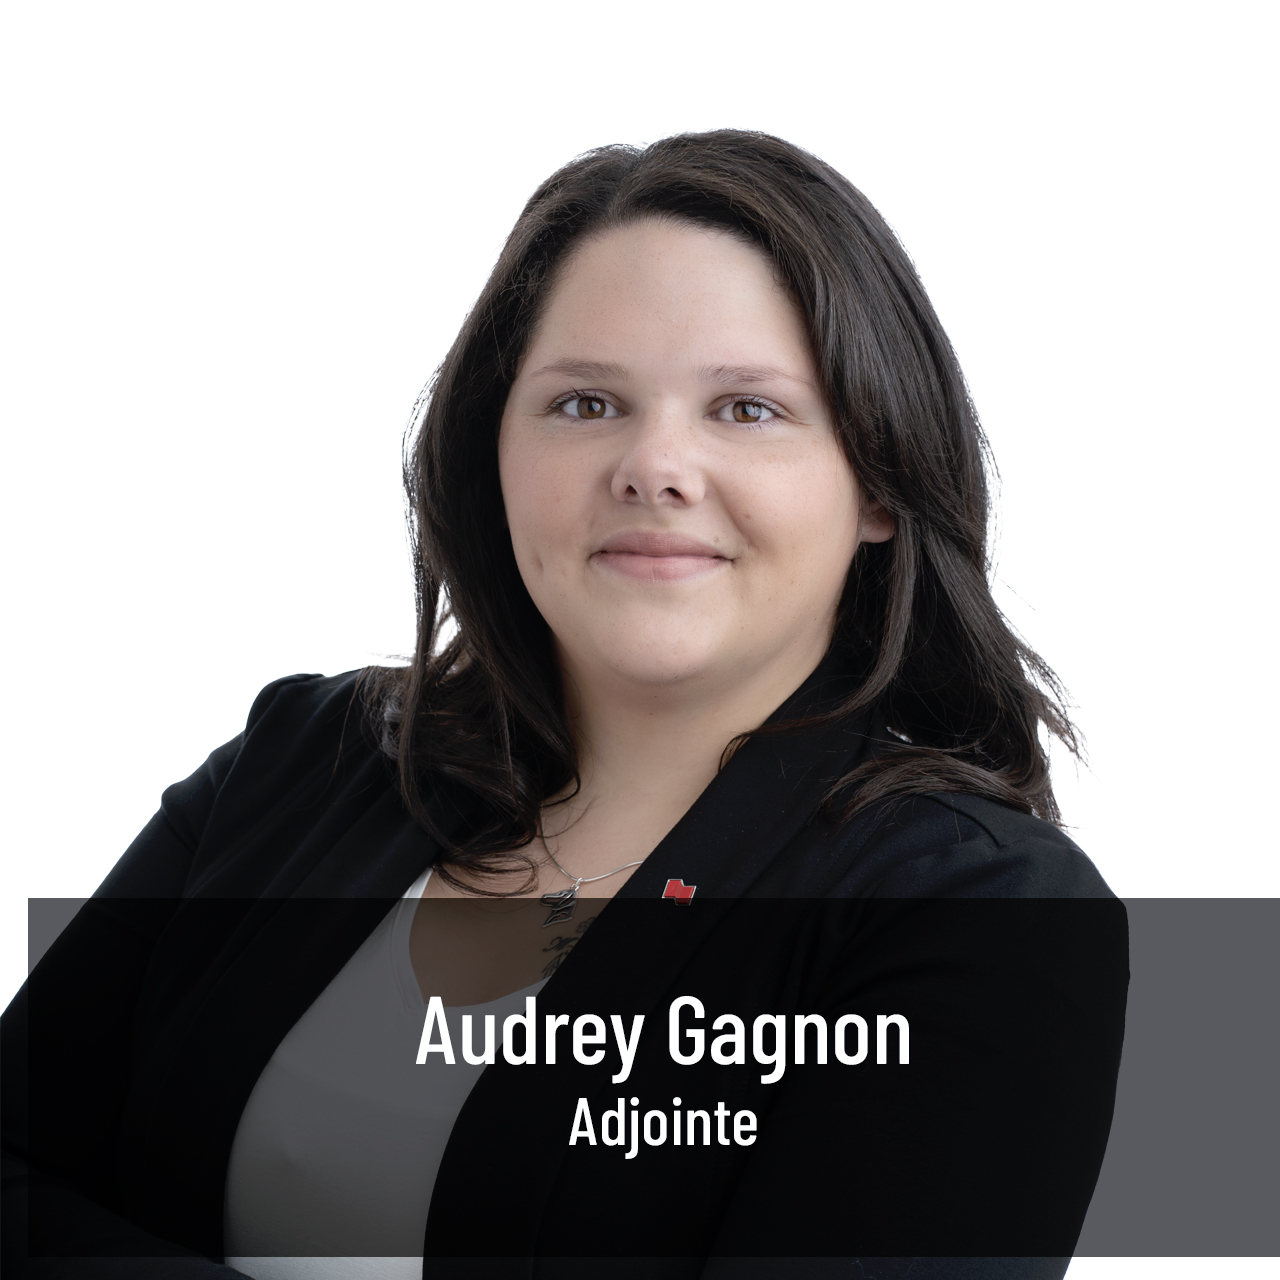 Audrey Gagnon